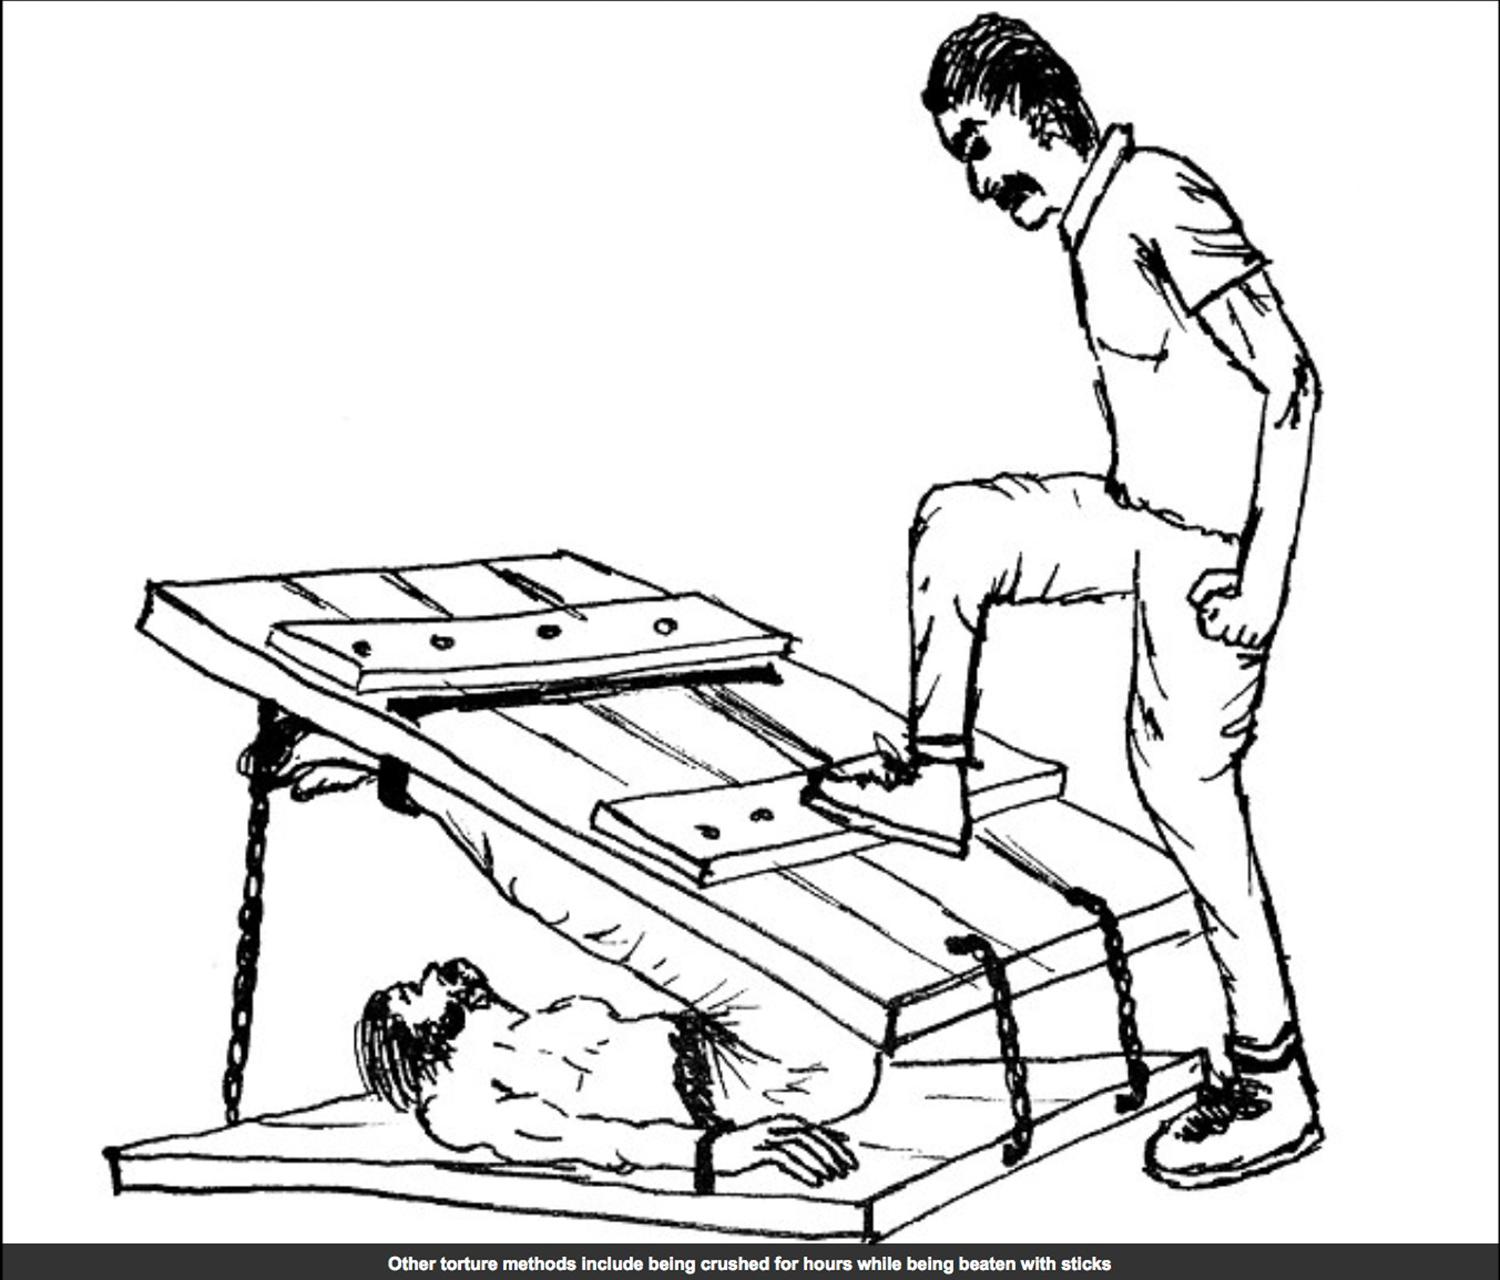 En teckning från Amnestys rapport visar en av fängelsets tortyrmetoder